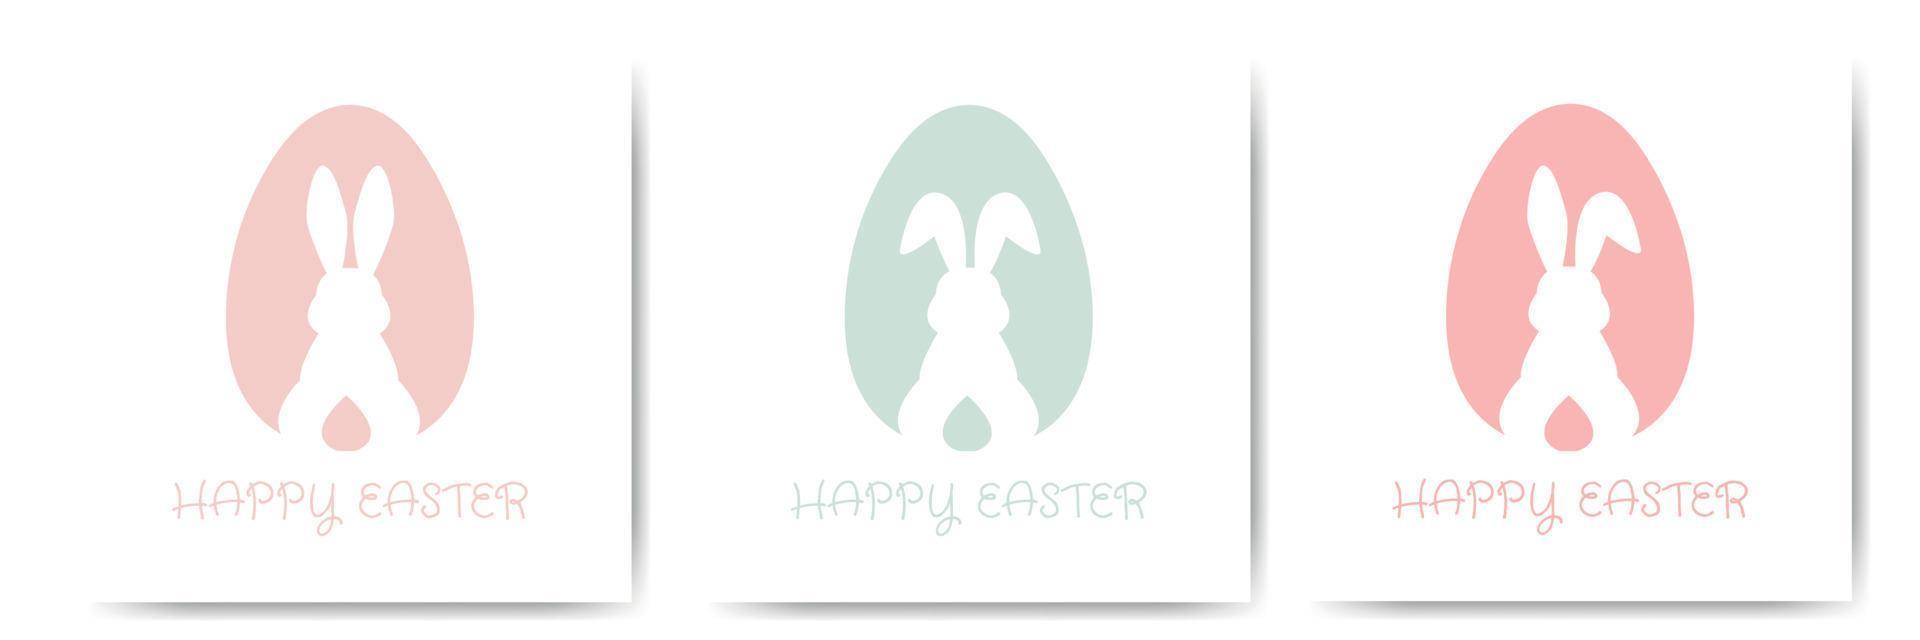 ställ glad påskkort med ägg och kanin siluett i pastellfärger. söta gratulationskort eller affisch. vektorillustration i platt minimalistisk stil. vektor